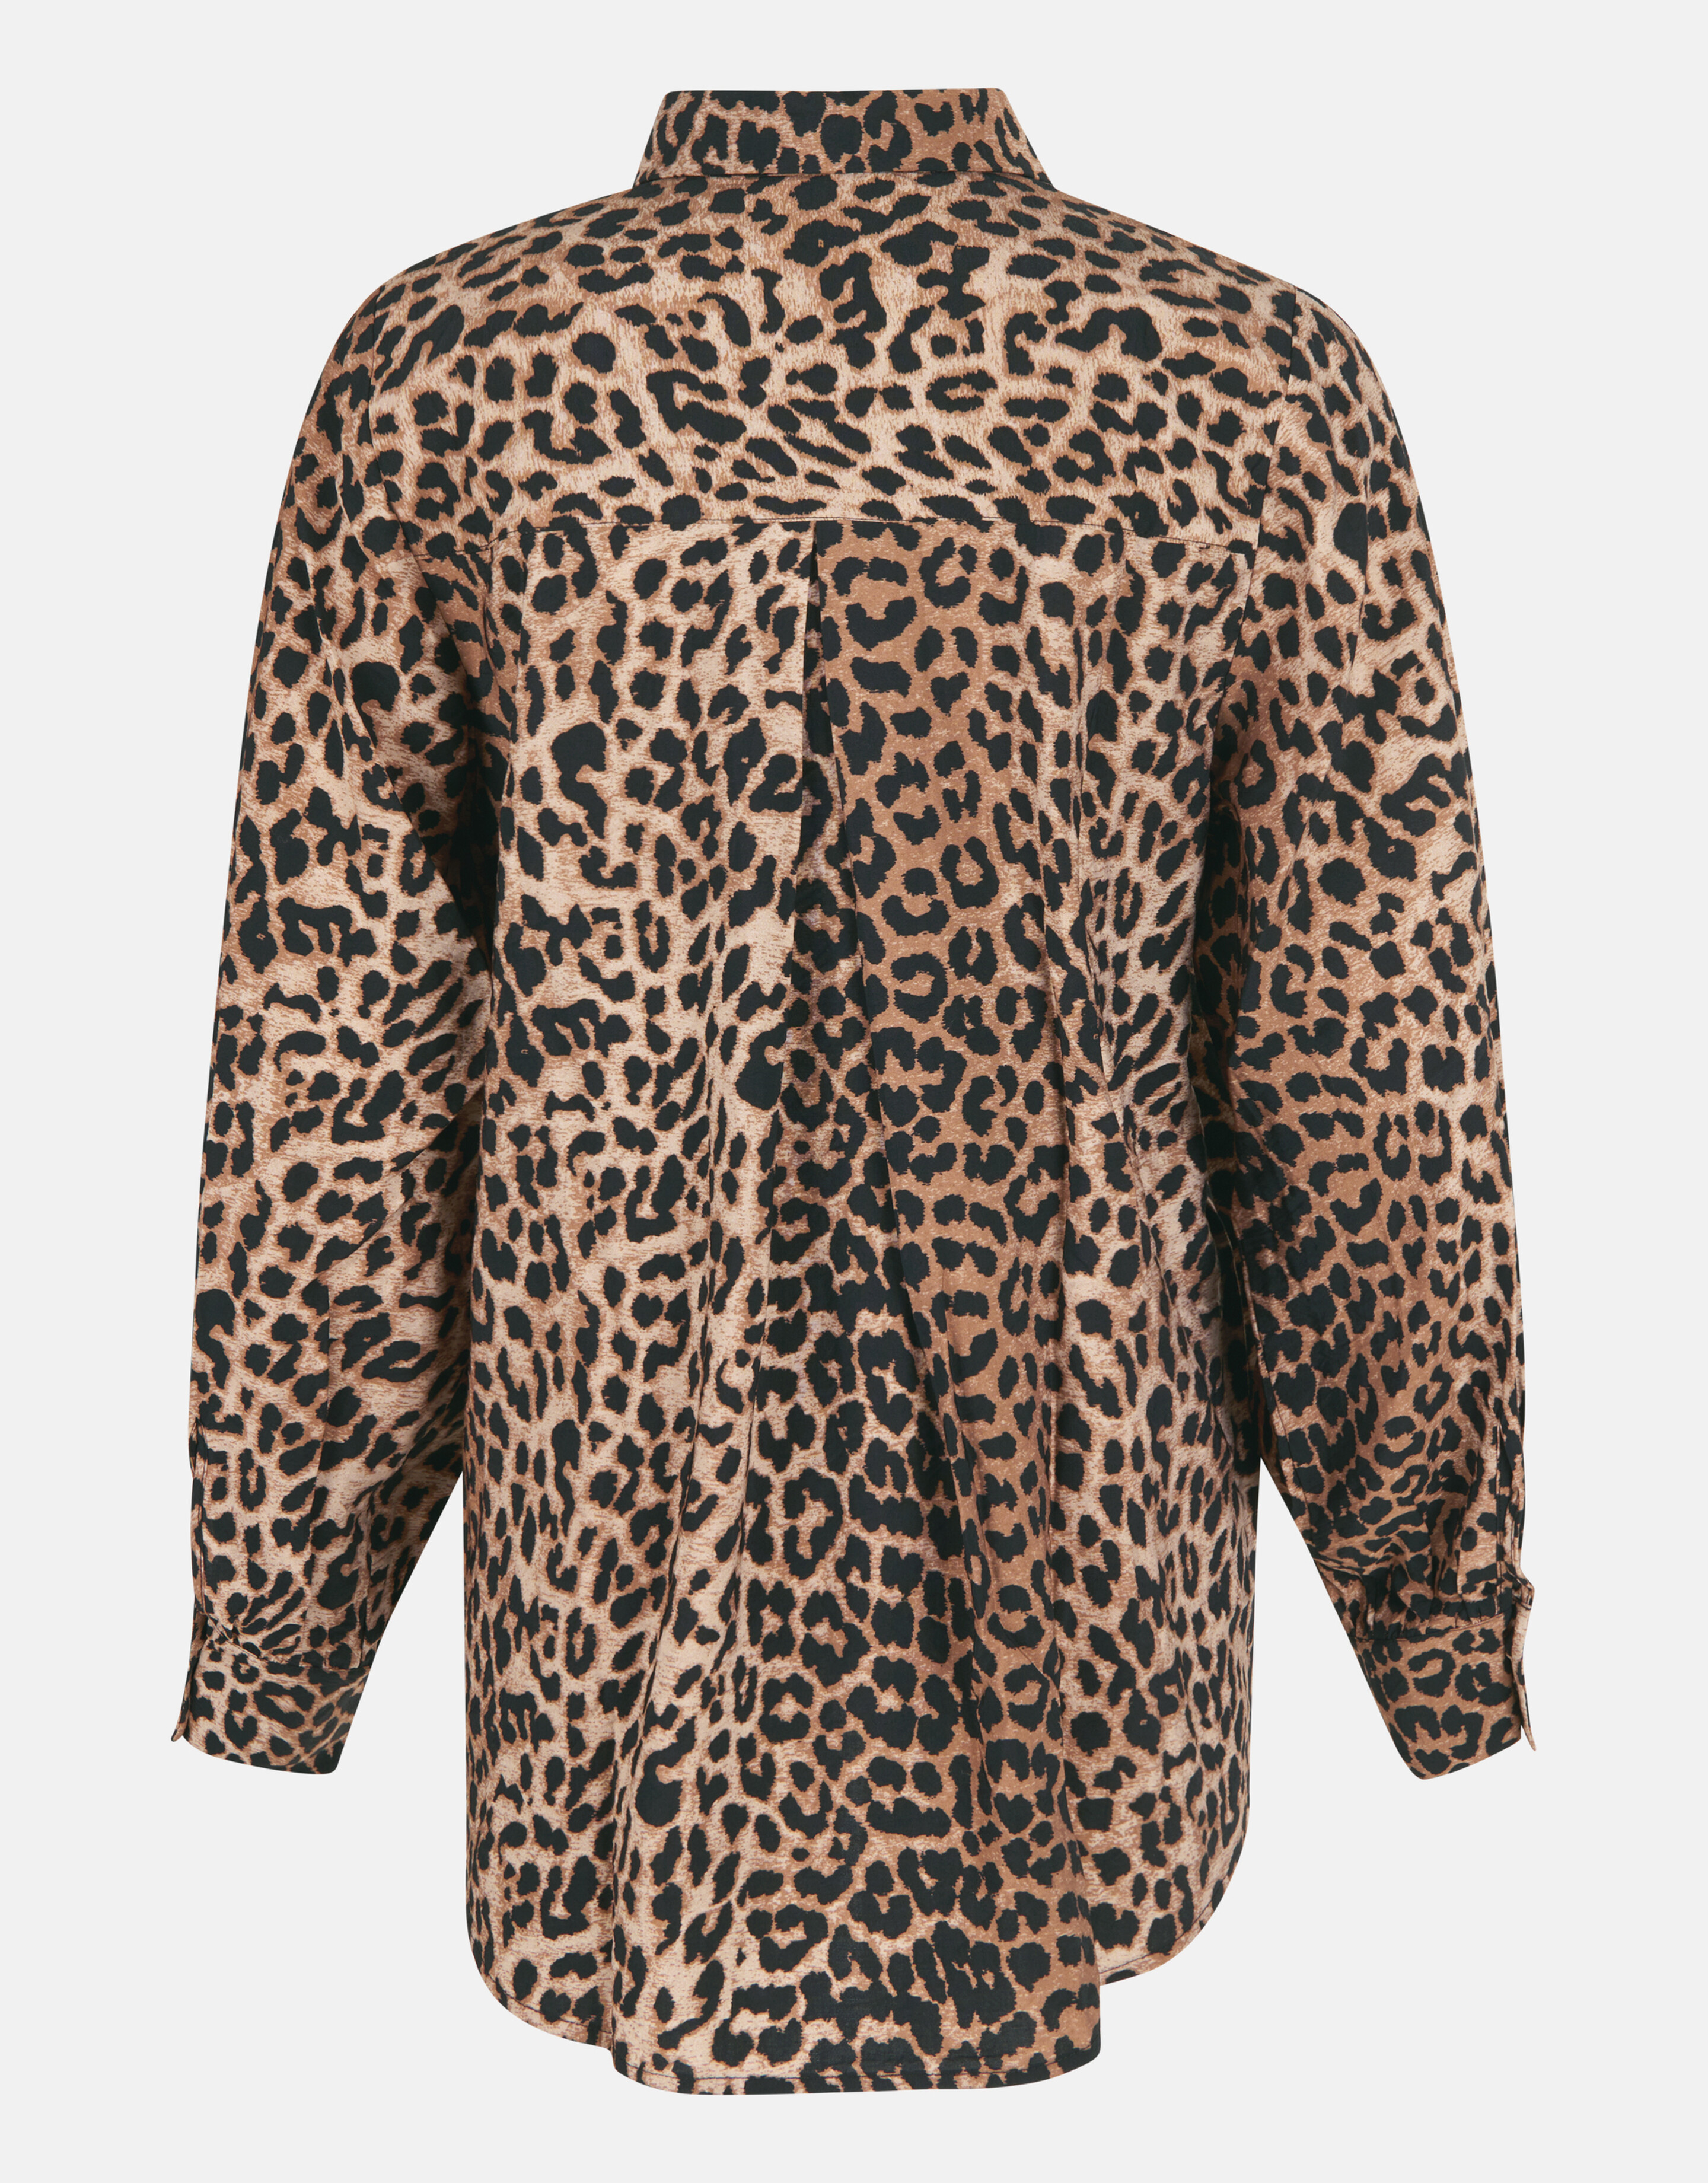 Bluse mit Leopardenmuster Braun SHOEBY WOMEN